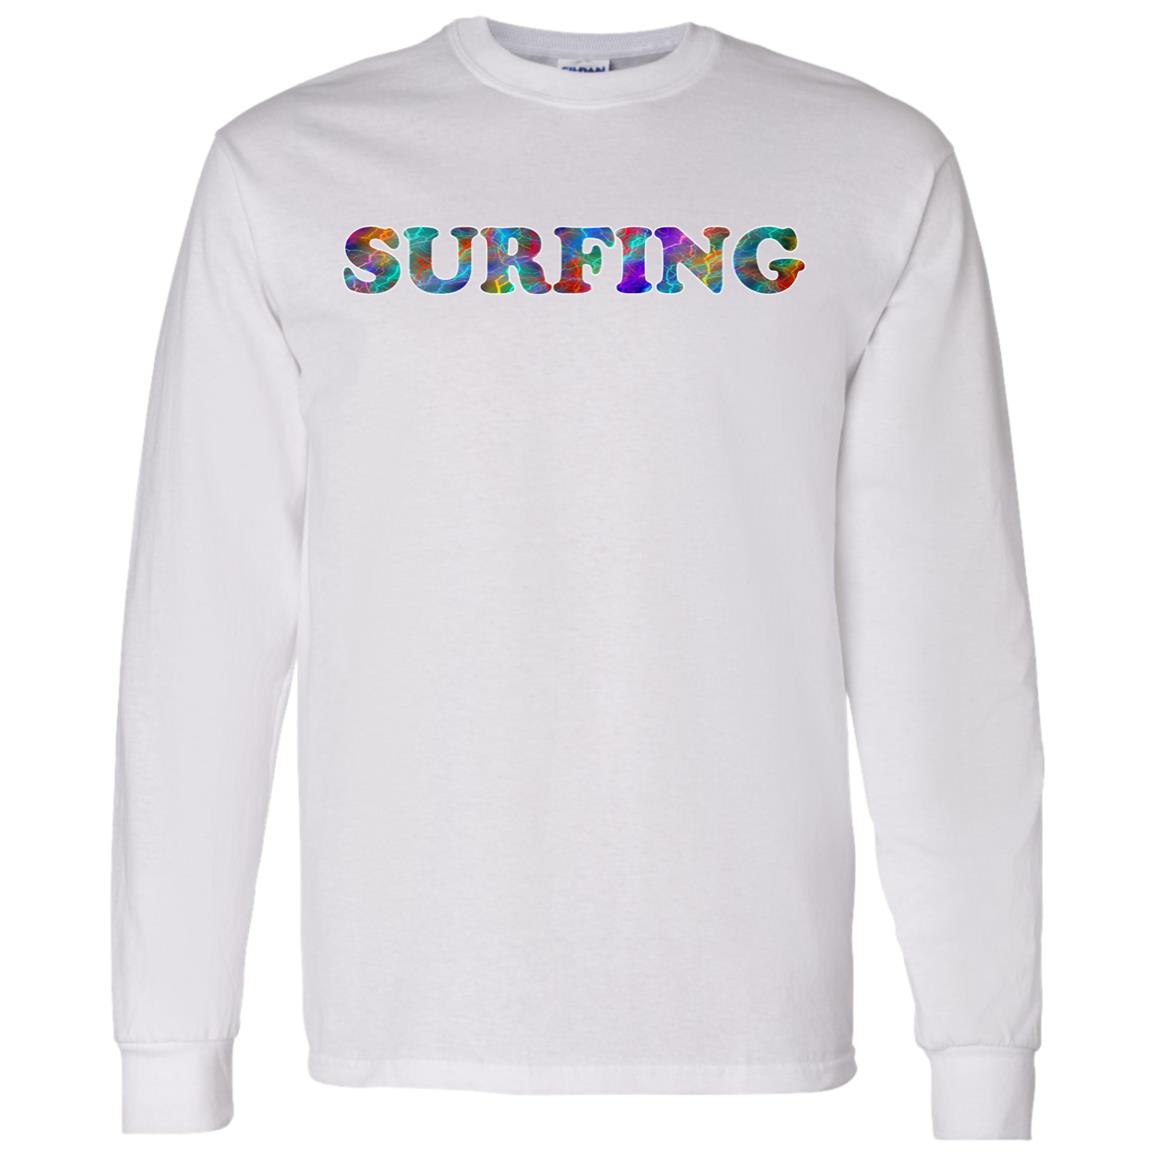 SURFING SPORT LONG SLEEVE T-SHIRT